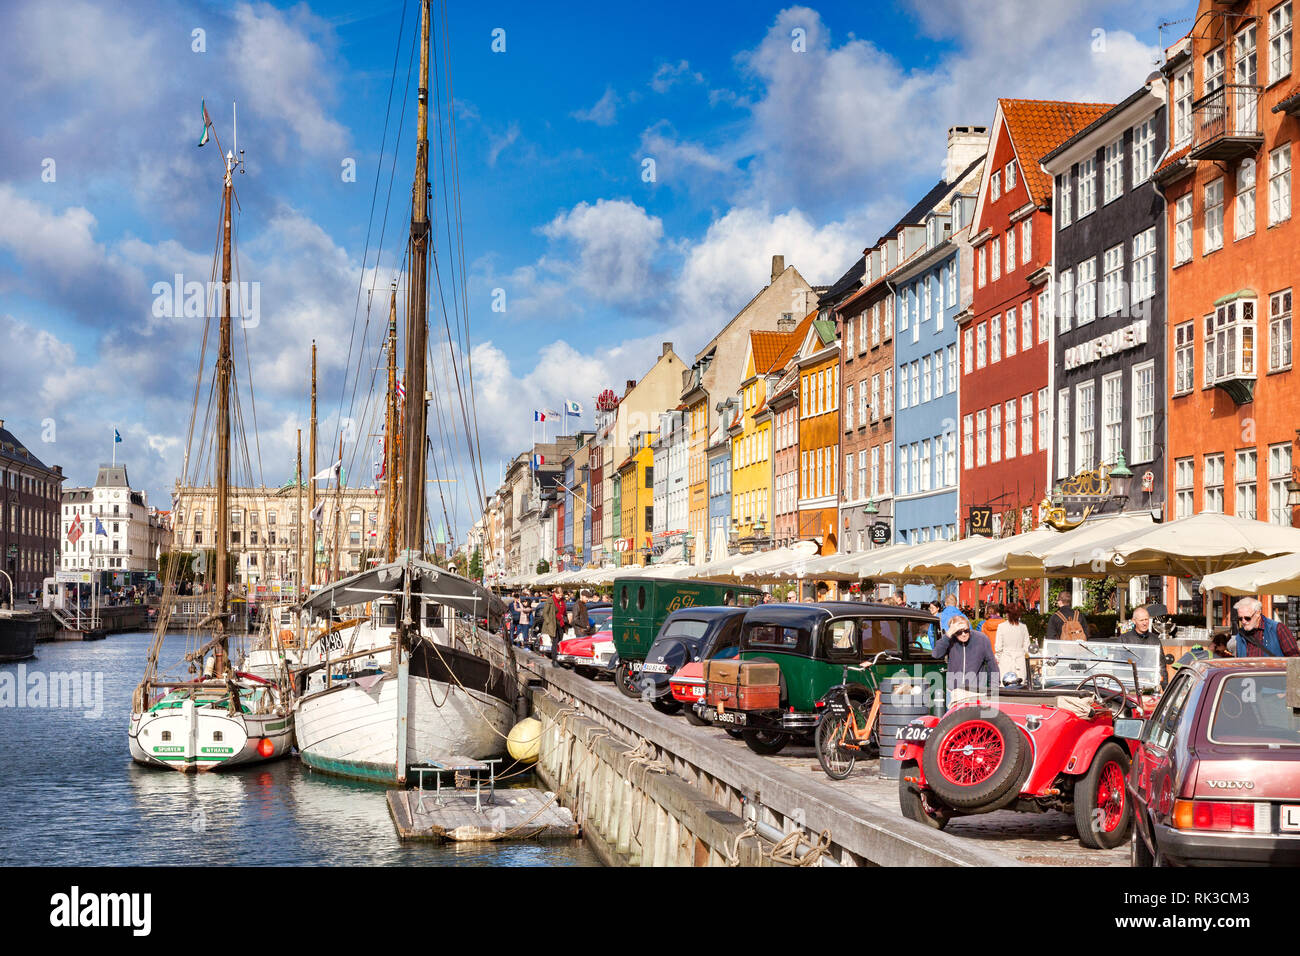 23. September 2018: Kopenhagen, Dänemark - klassische Autos auf dem Display neben dem Kanal im Kopenhagener Stadtteil Nyhavn, mit seinen bunten 17. und 18. Stockfoto